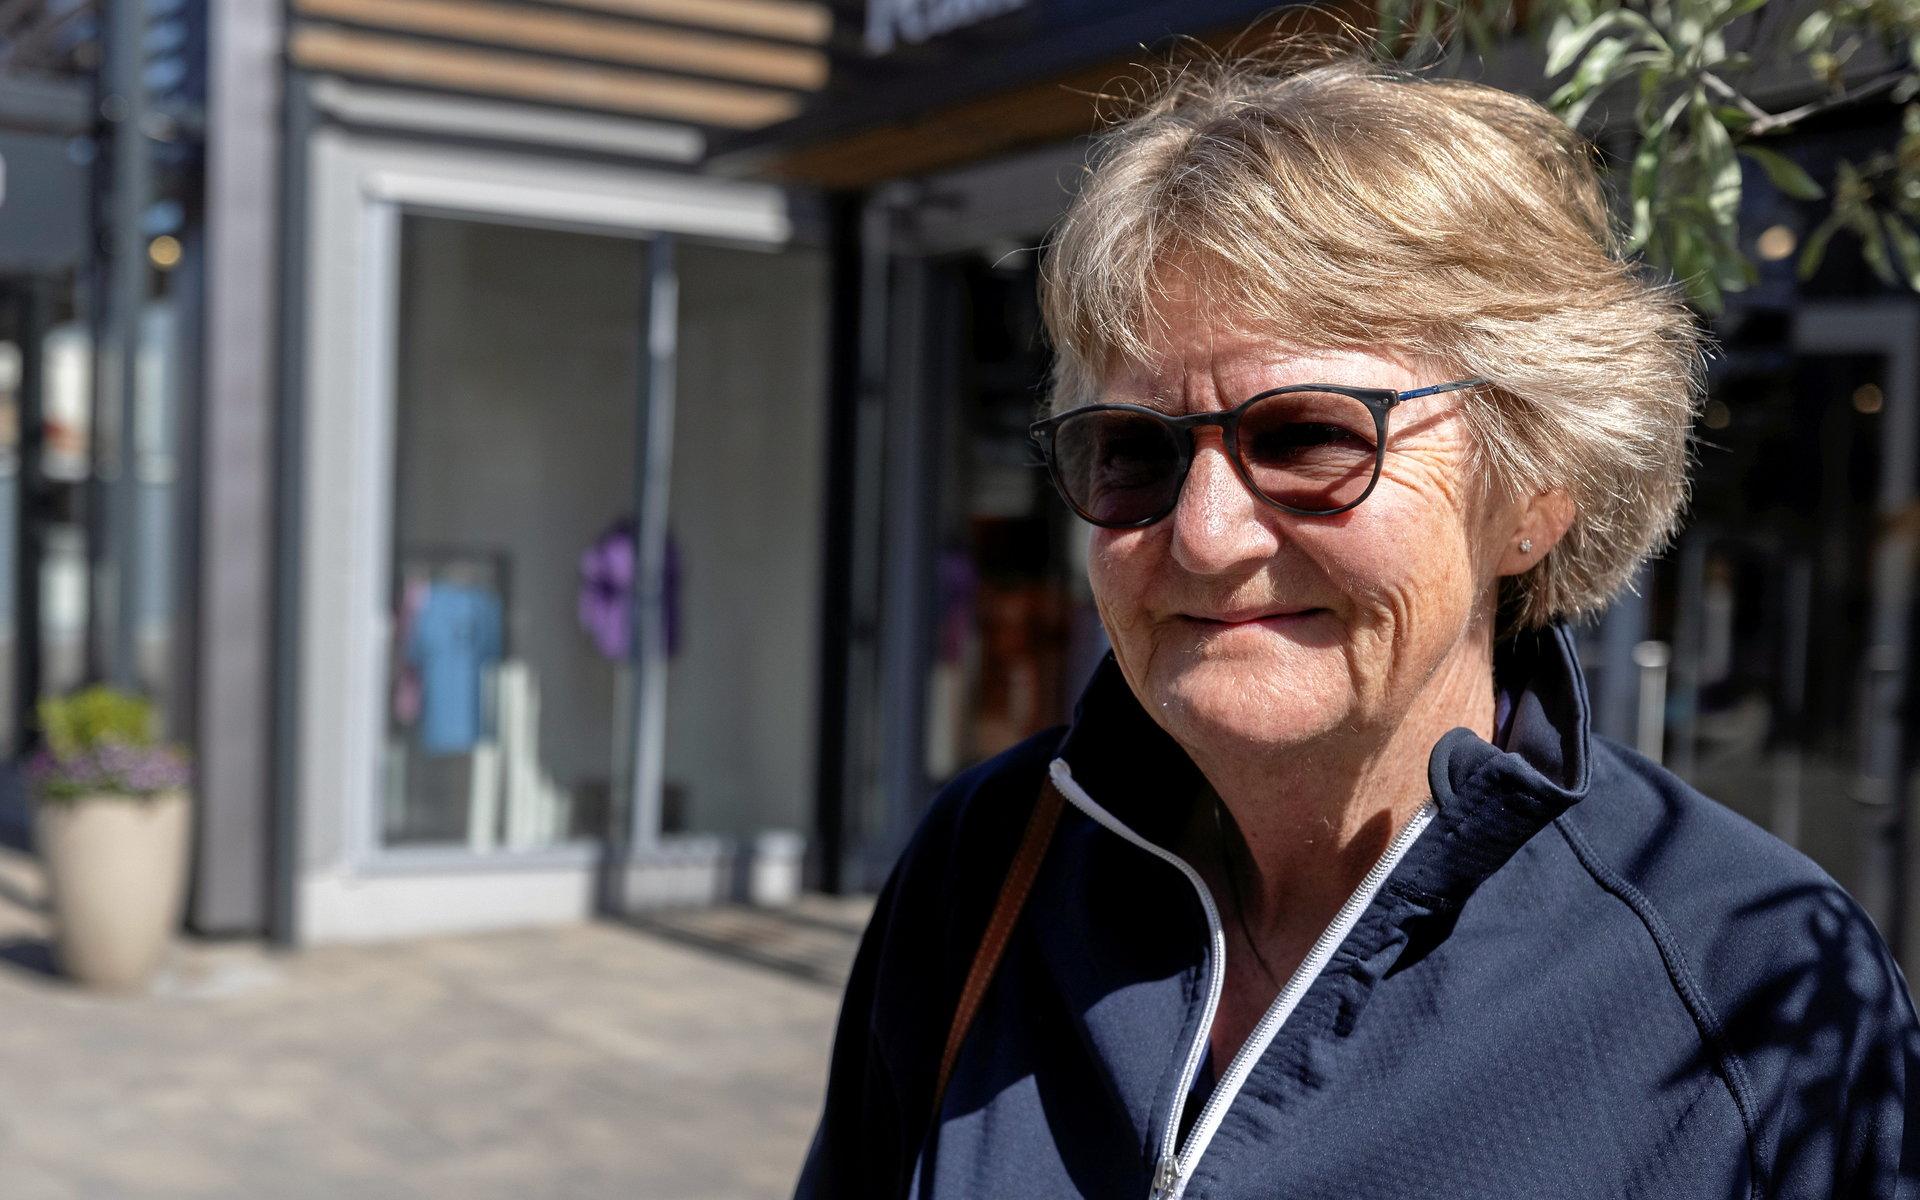 Ingrid Alterby från Kungälv har åkt till Hede för att besöka svärsonen i nyöppnade butiken Innesvingen, som vänder sig till golfare.